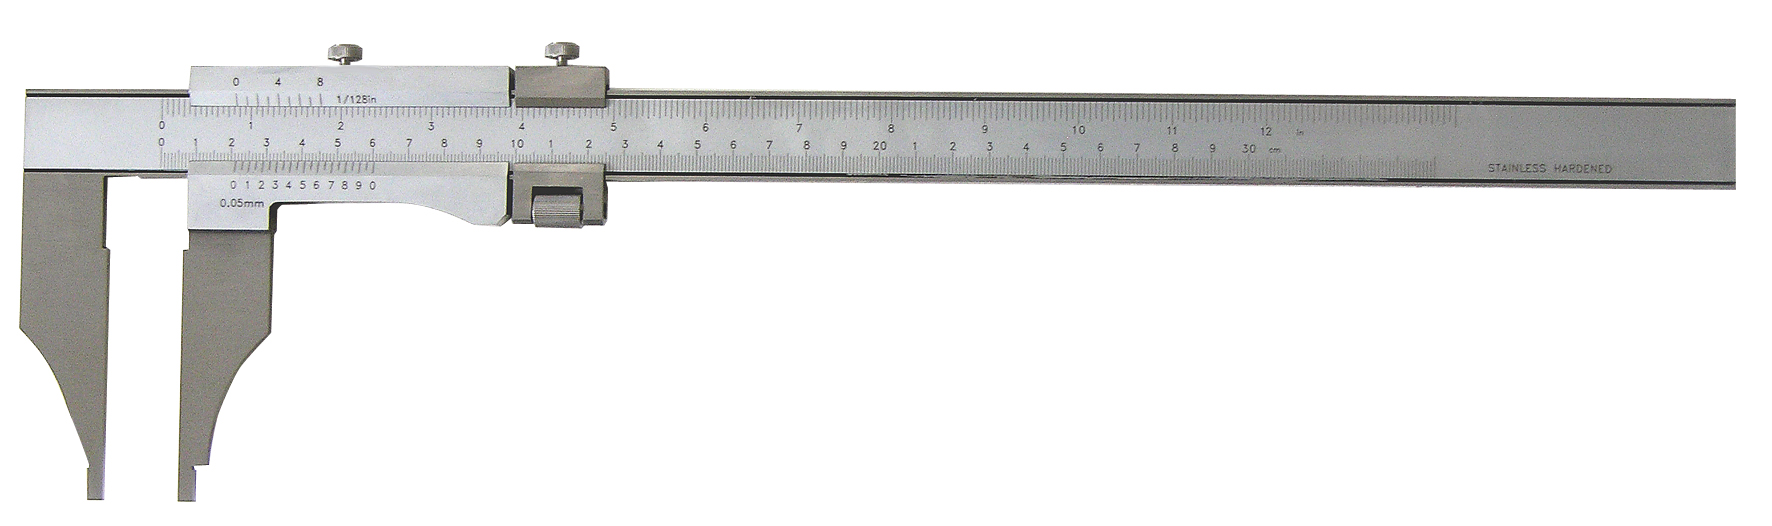 Meßschieber (Schieblehre) mit 1/20 mm Nonius - WENZ-MODELLBAU